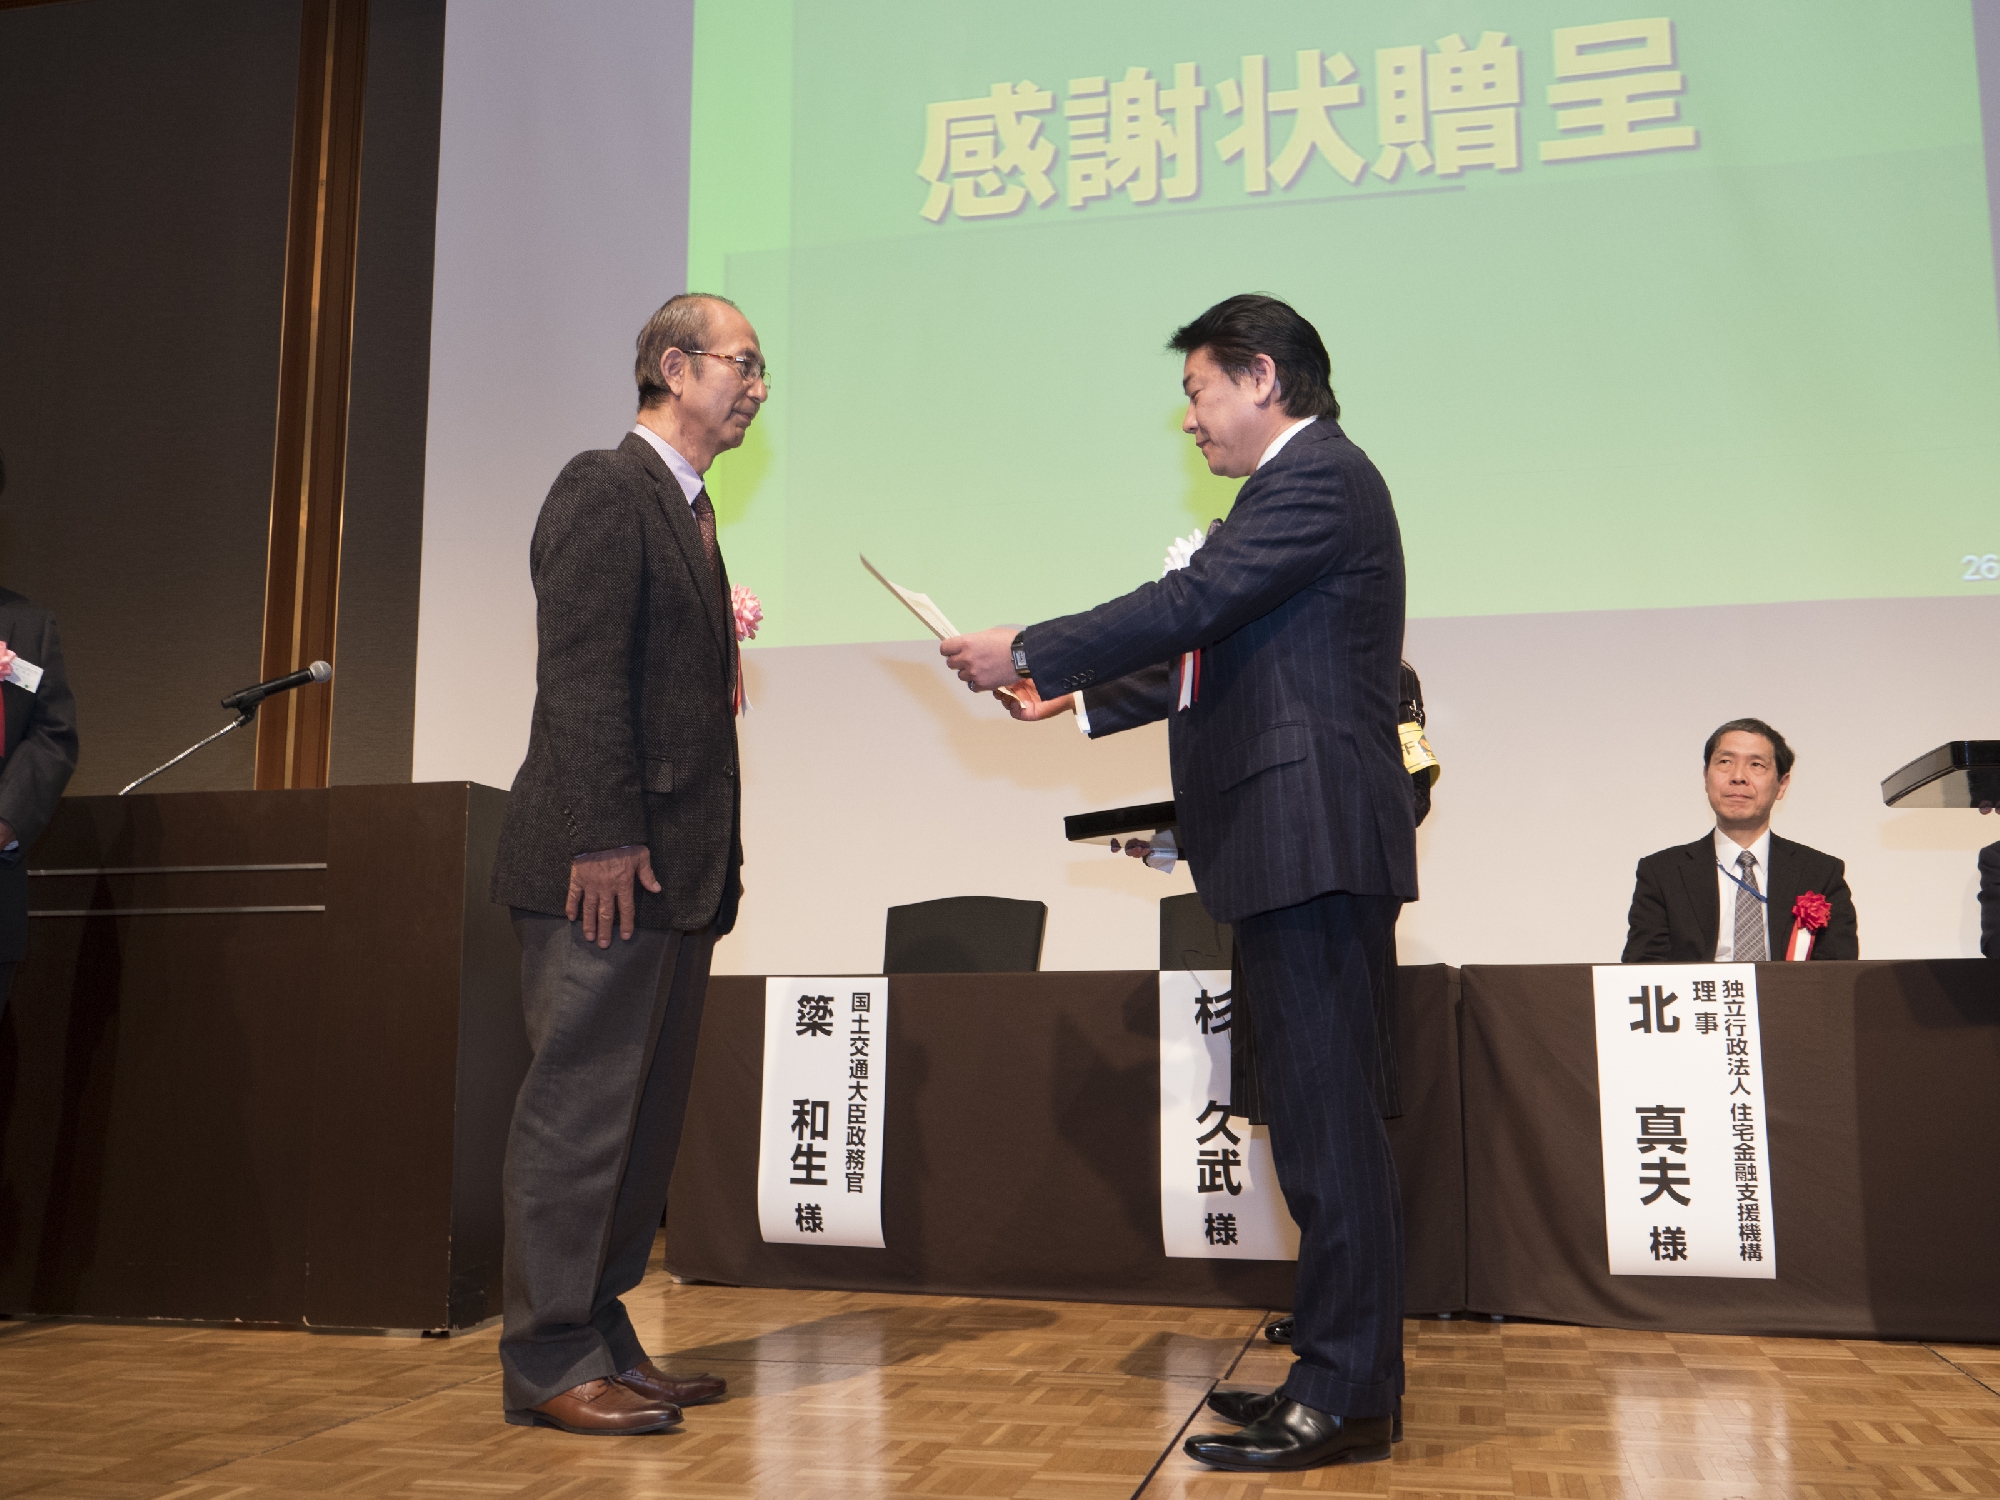 木耐協　2018年度全国大会にて、平山郁夫社長が表彰されました！